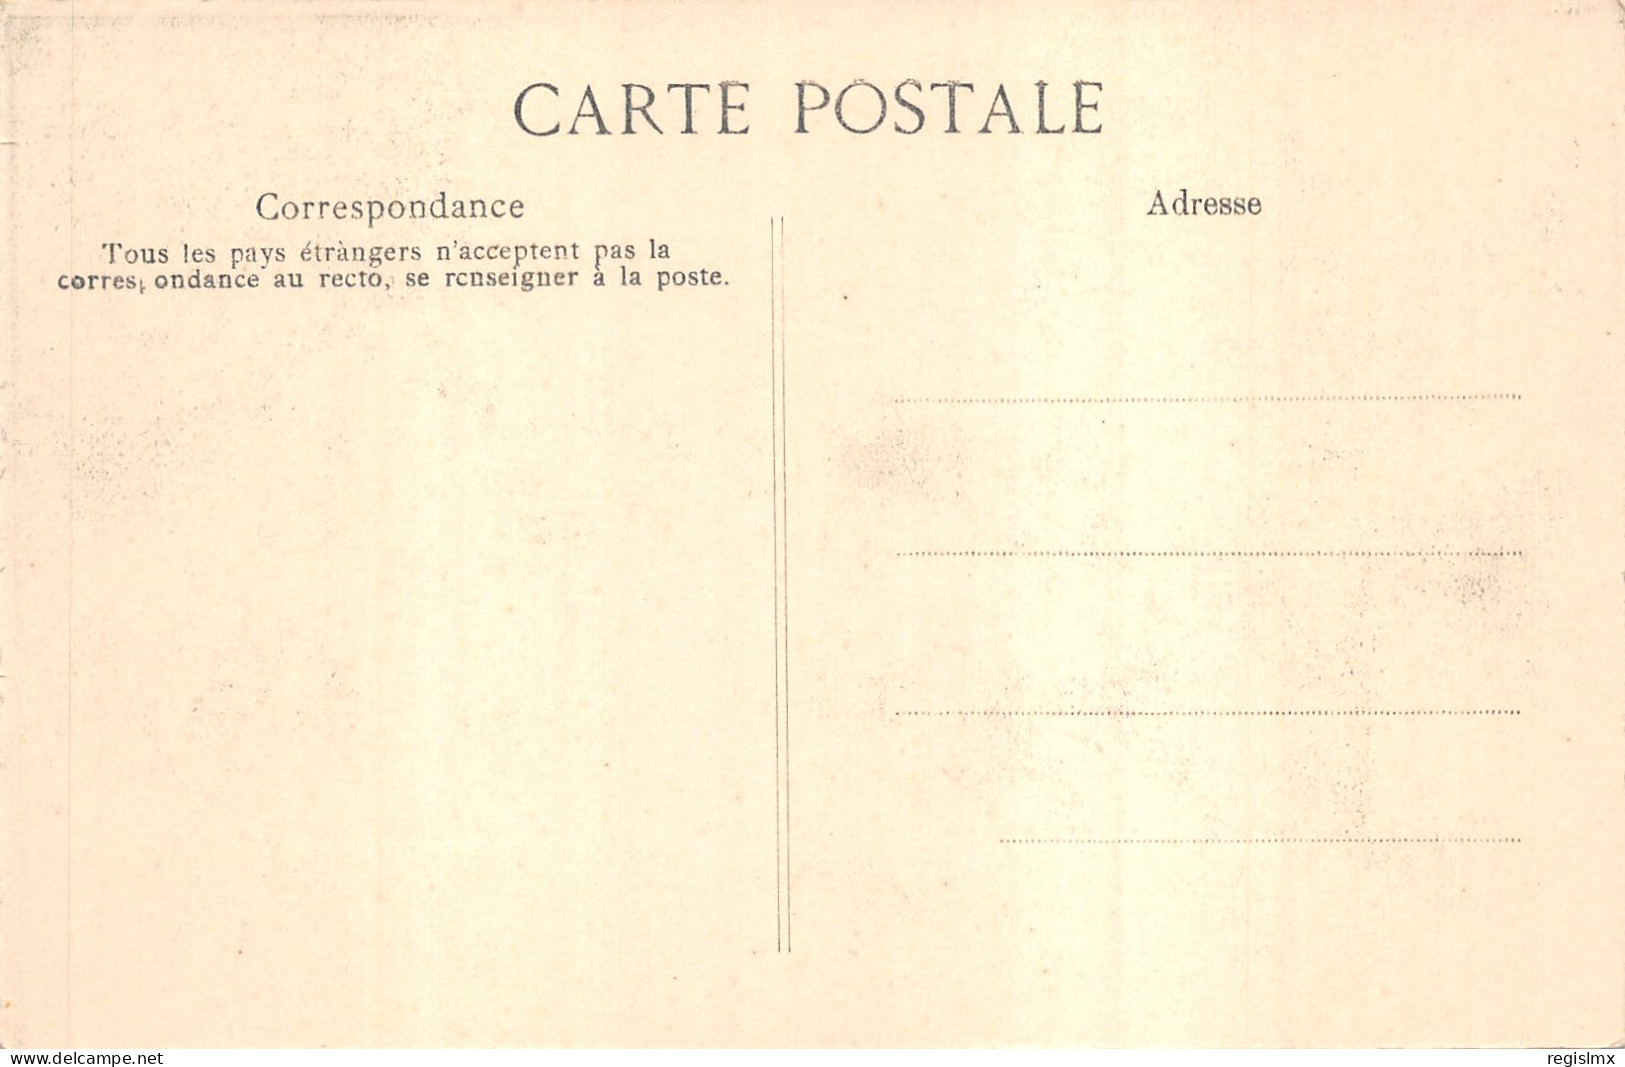 75-PARIS-CRUE DE LA SEINE-N°T2408-A/0129 - Paris Flood, 1910